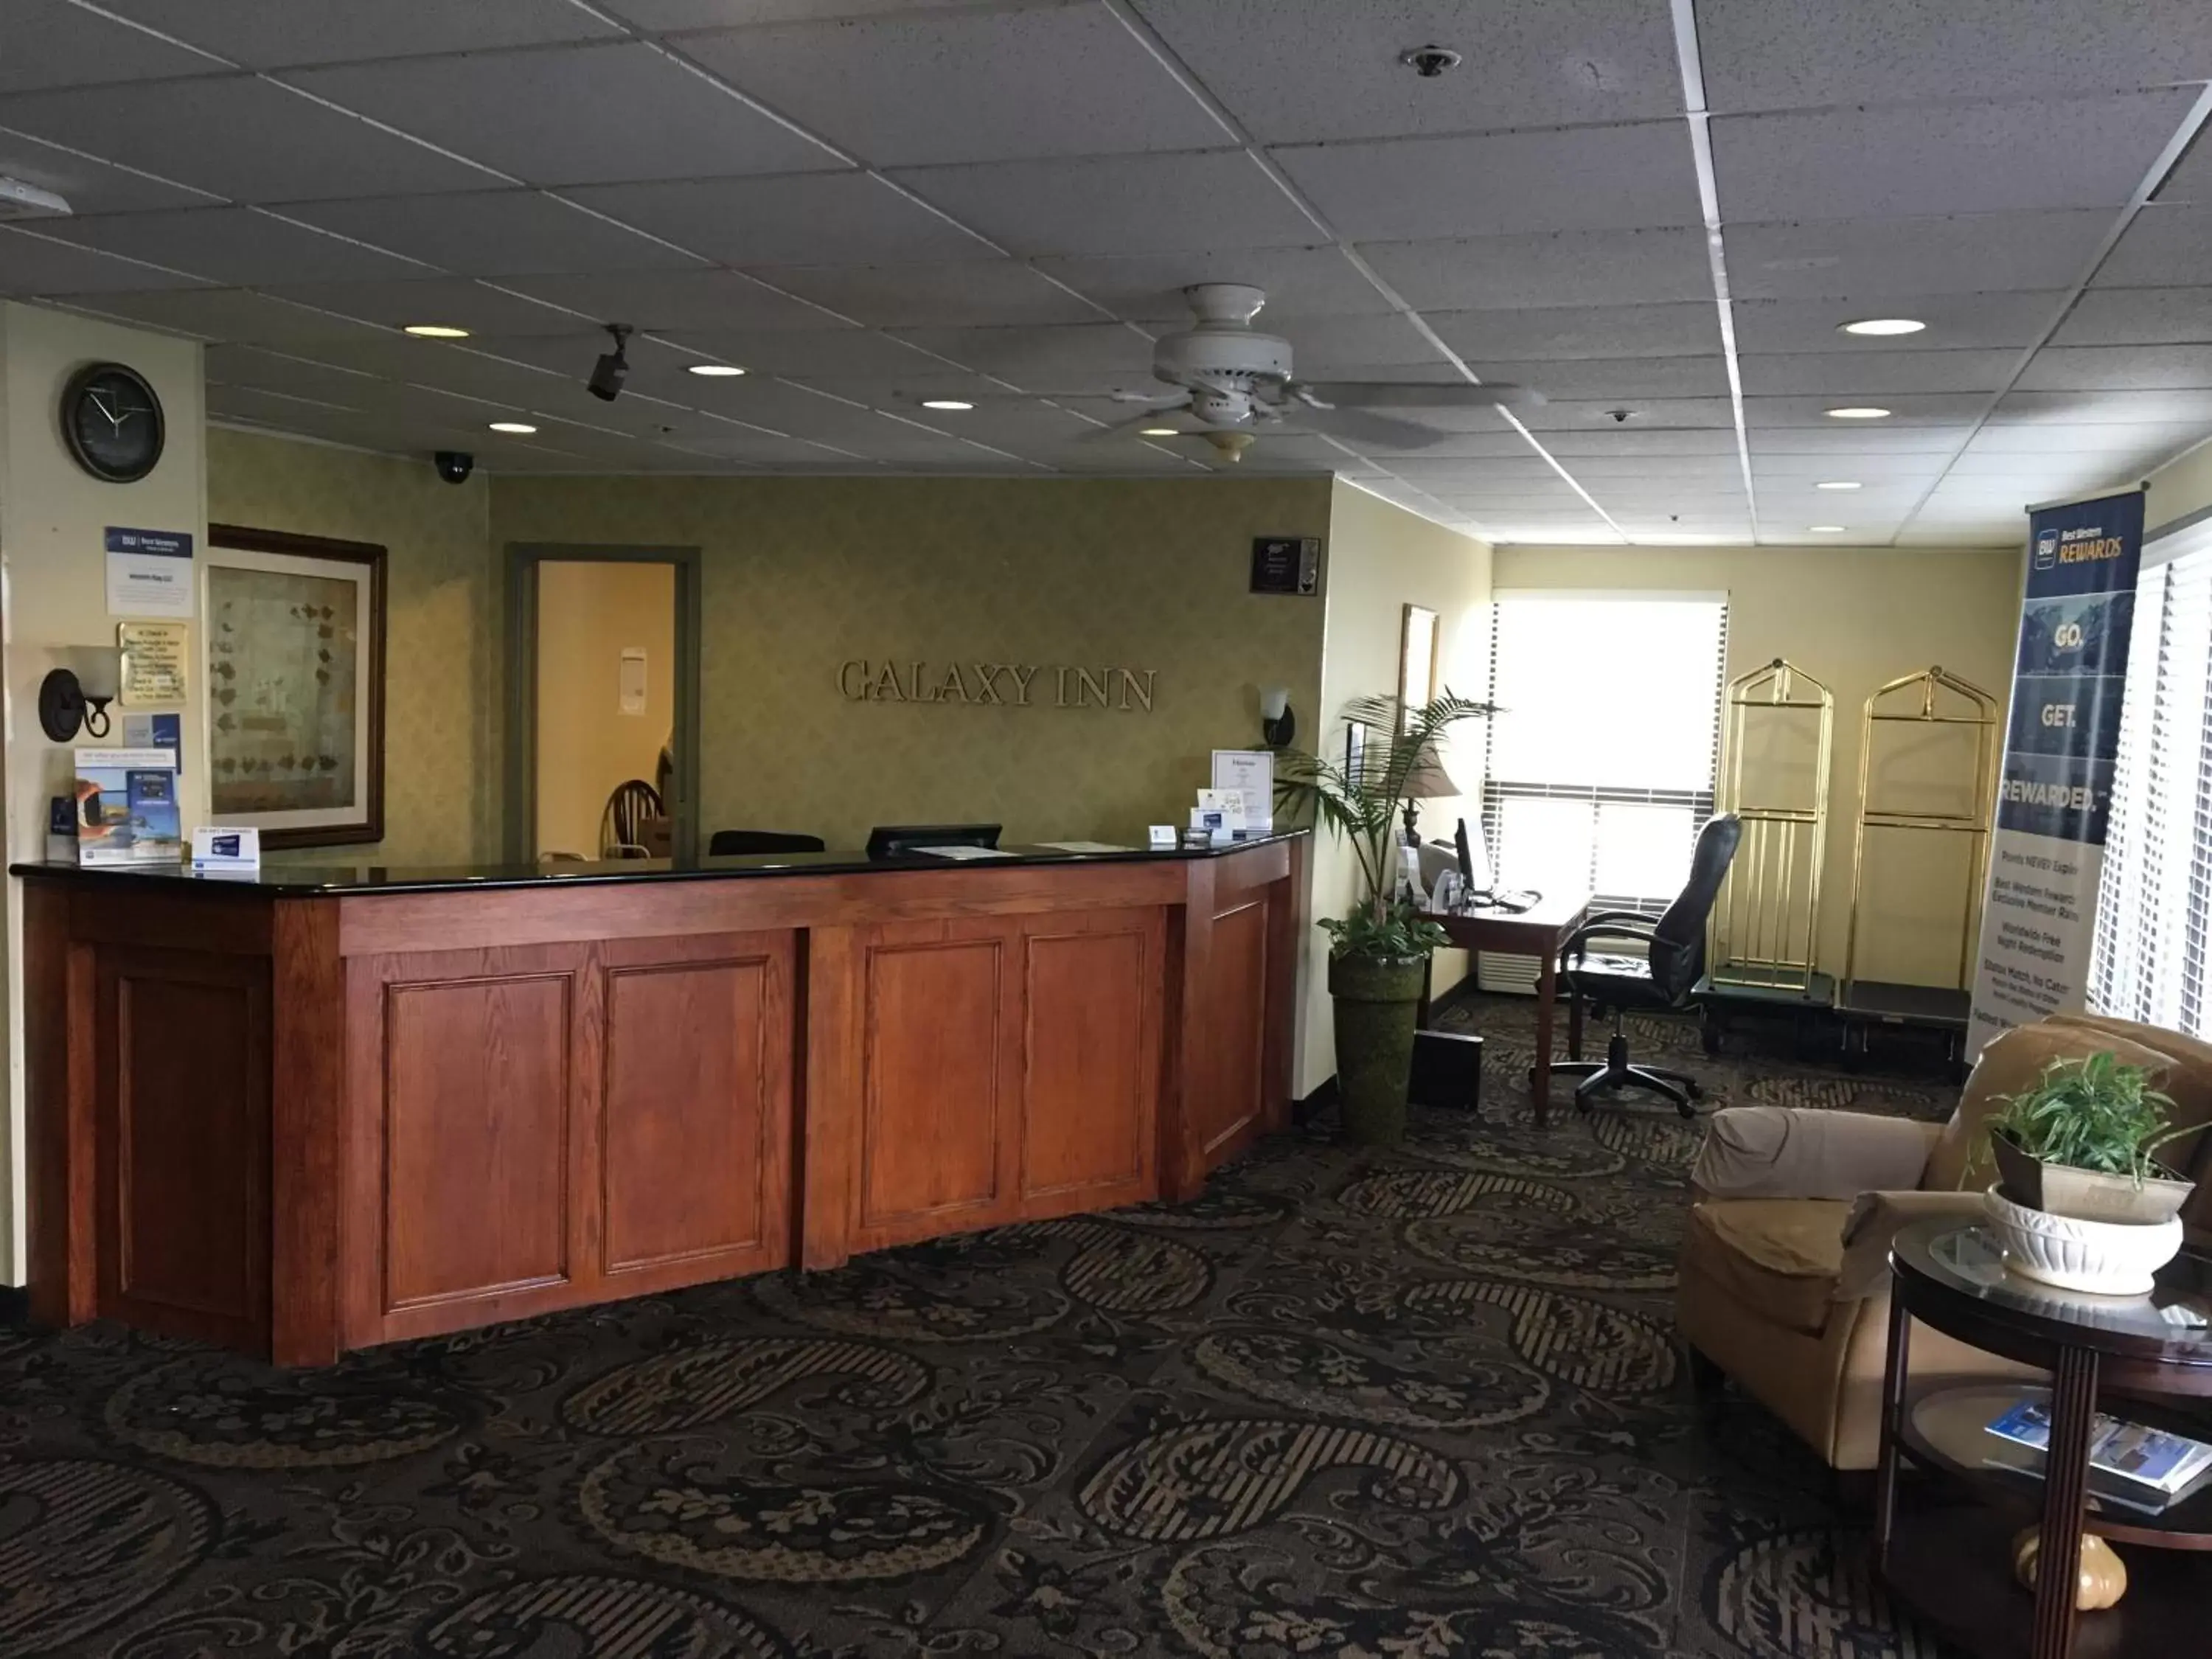 Lobby or reception, Lobby/Reception in Best Western Galaxy Inn